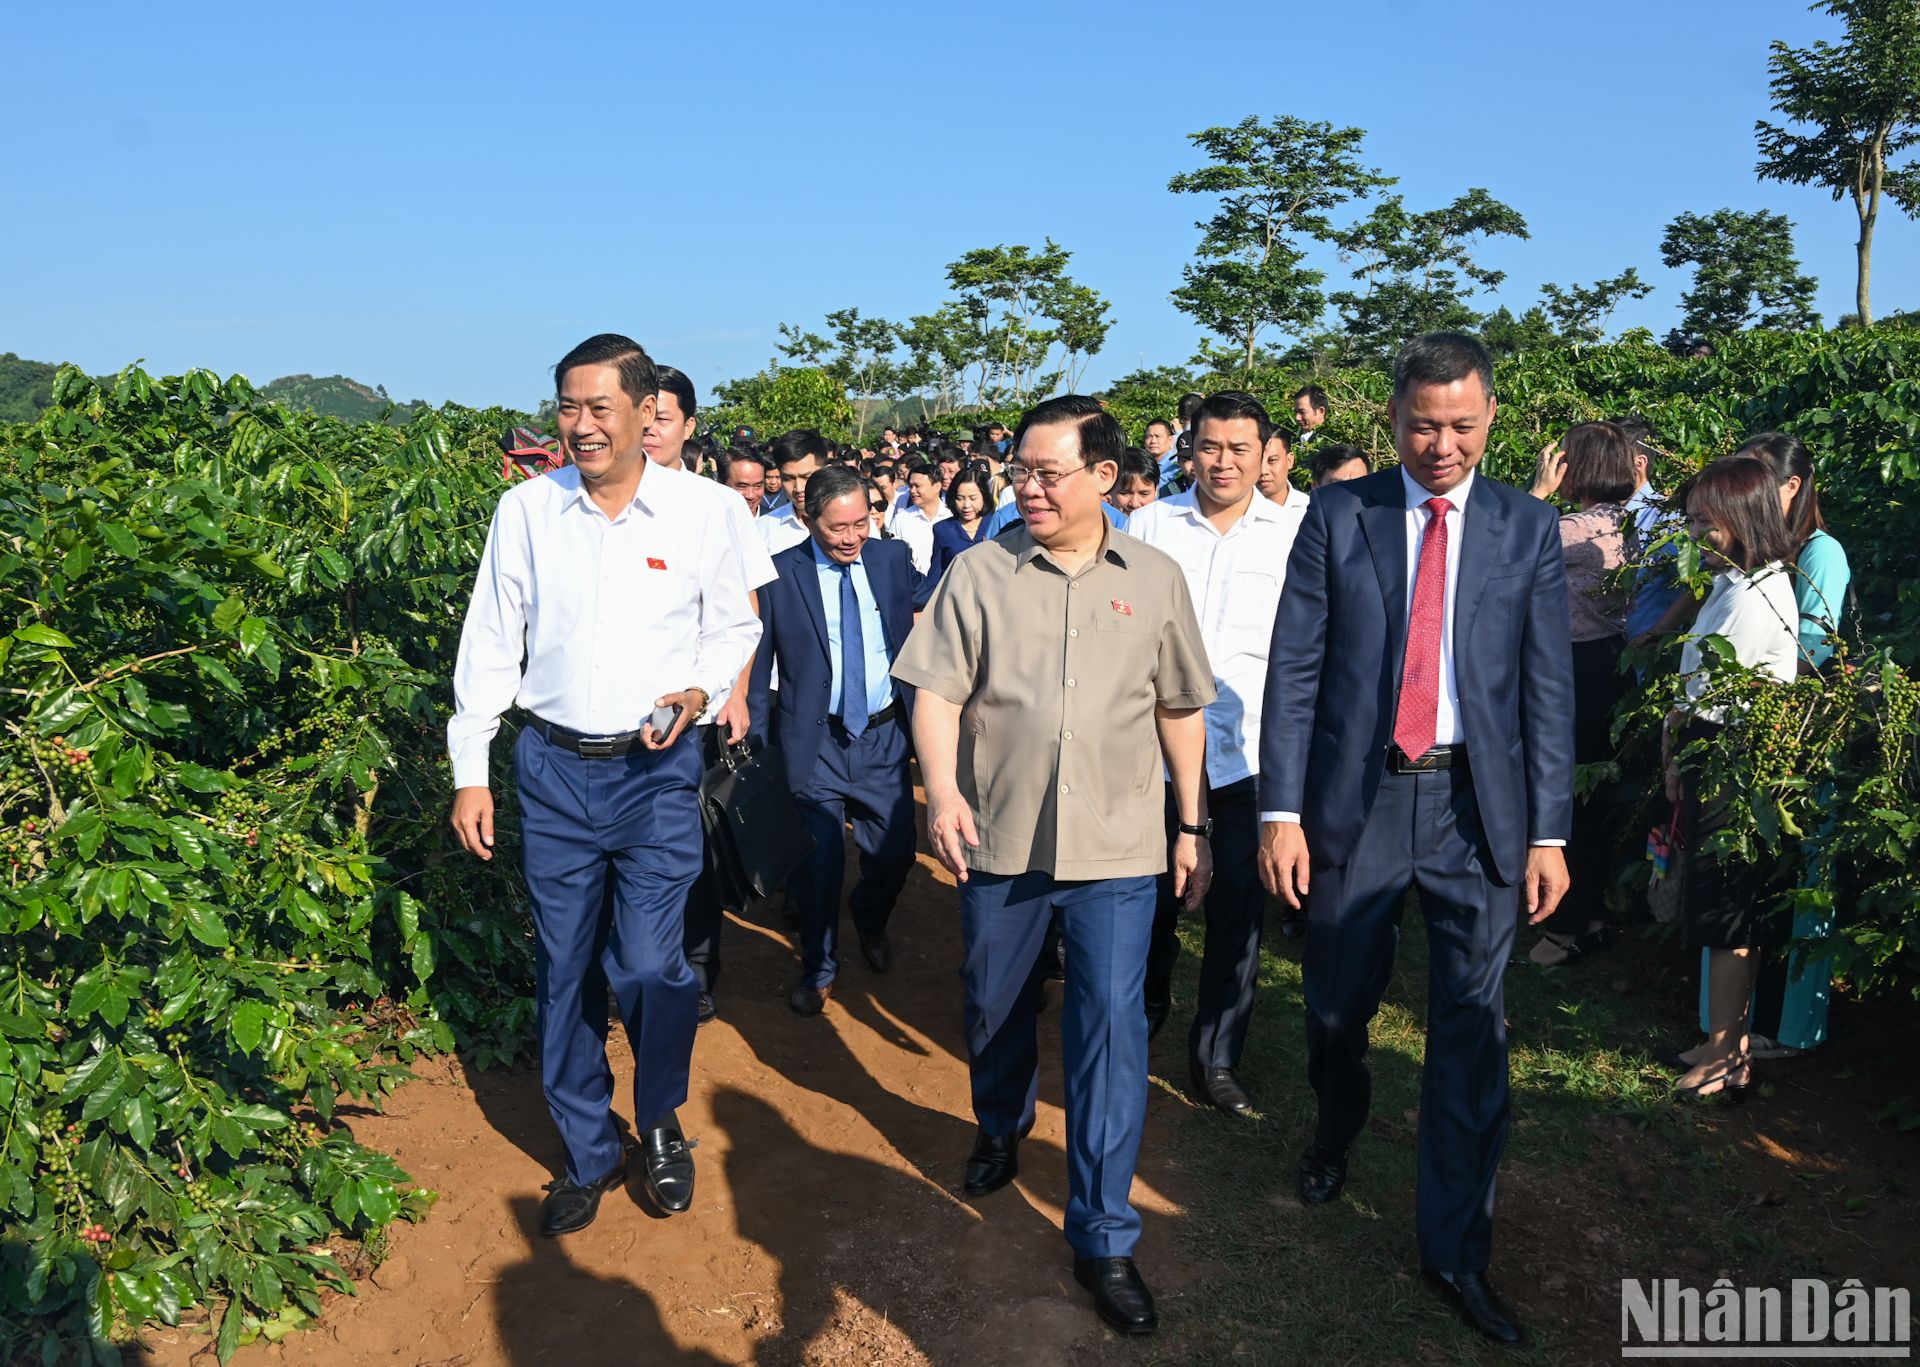 国会主席王廷惠一行实地考察山罗市华罗乡咖啡种植区。